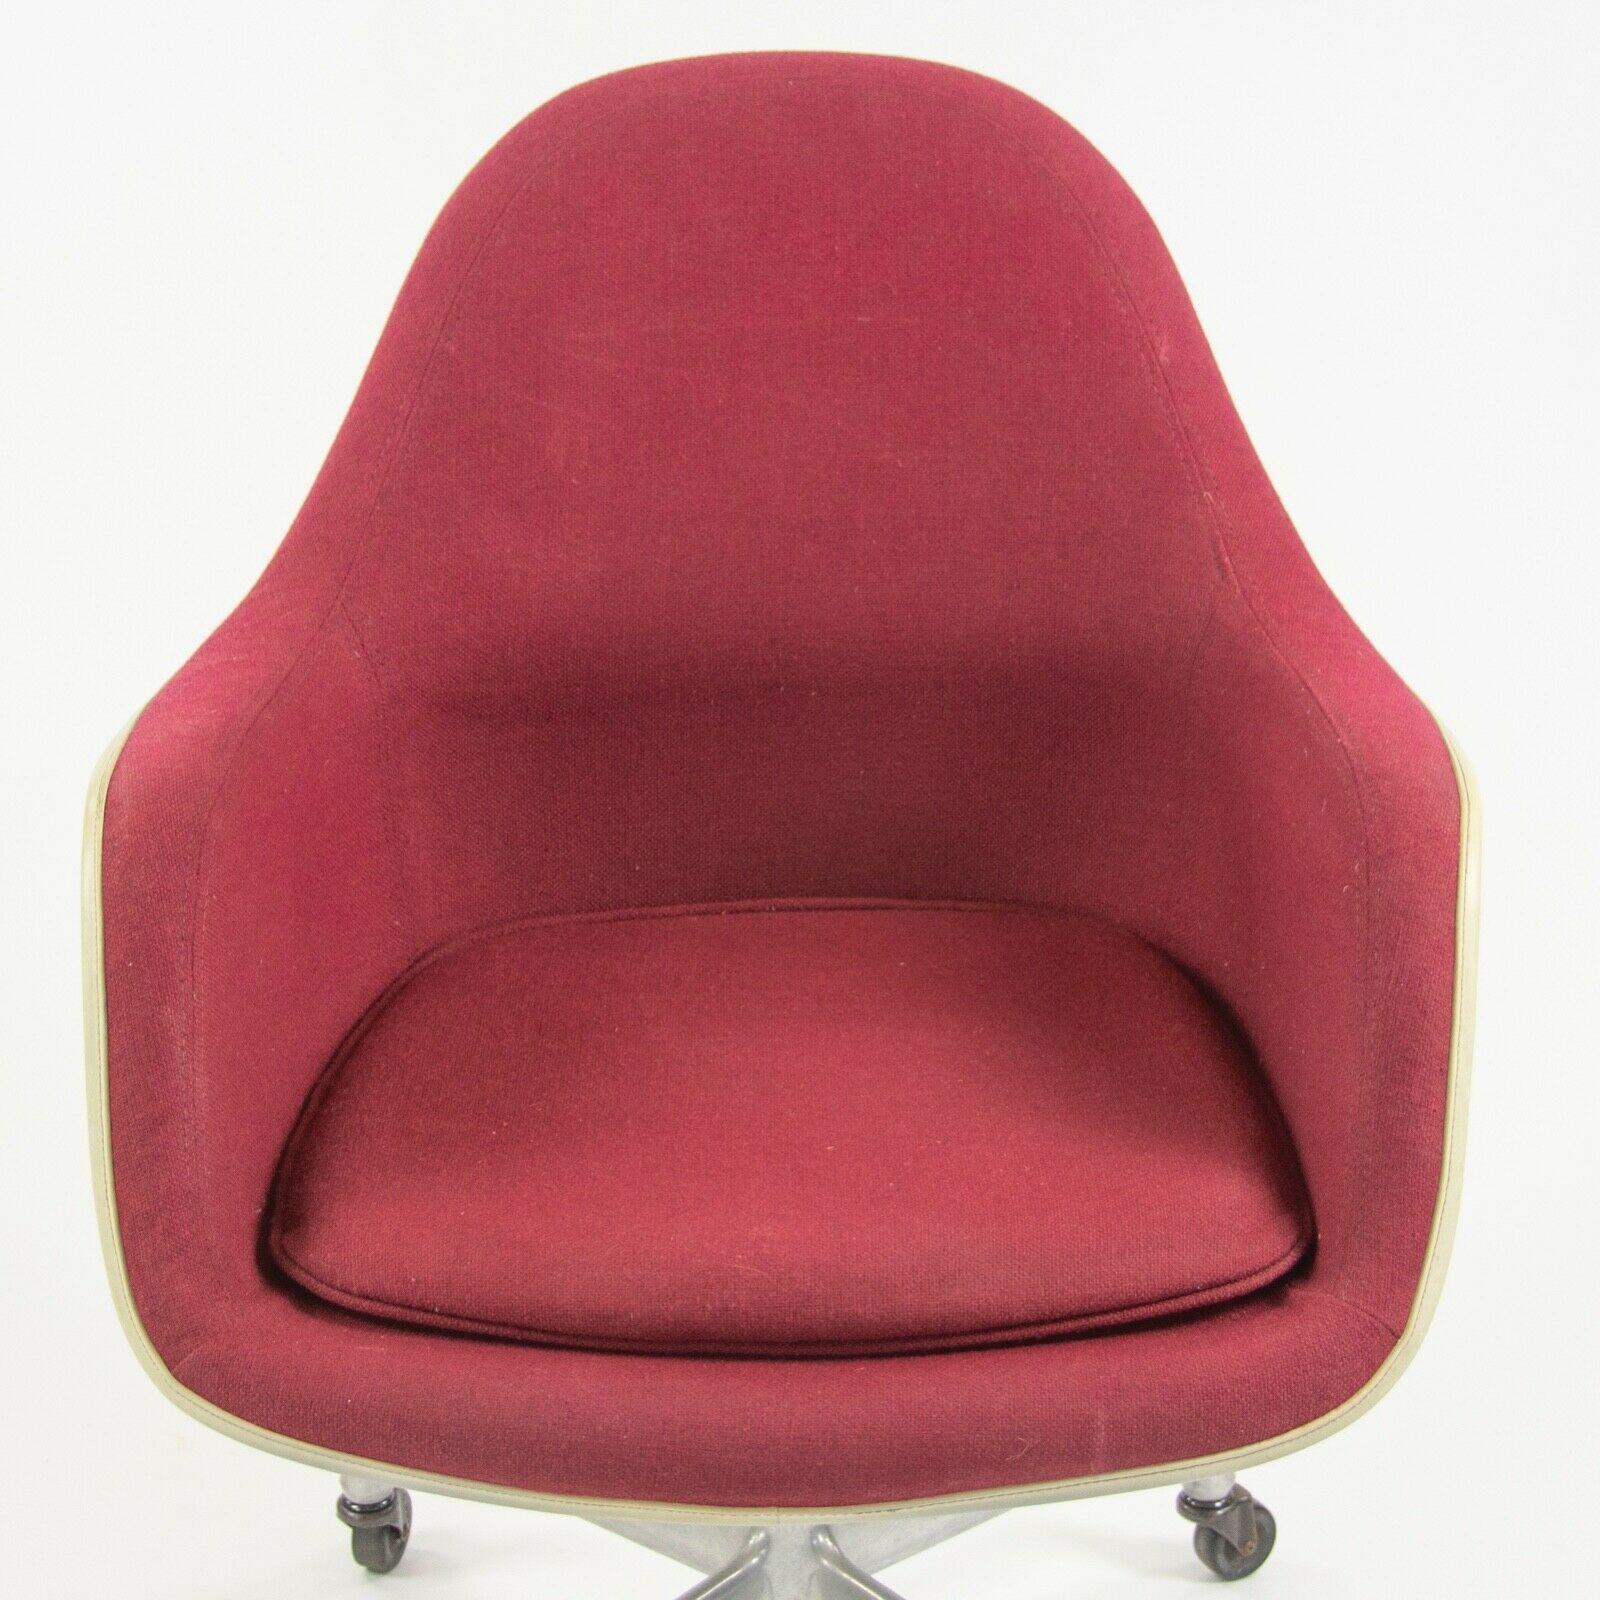 1977 Eames Herman Miller EC175 Upholstered Fiberglass Shell Chair For Sale 2